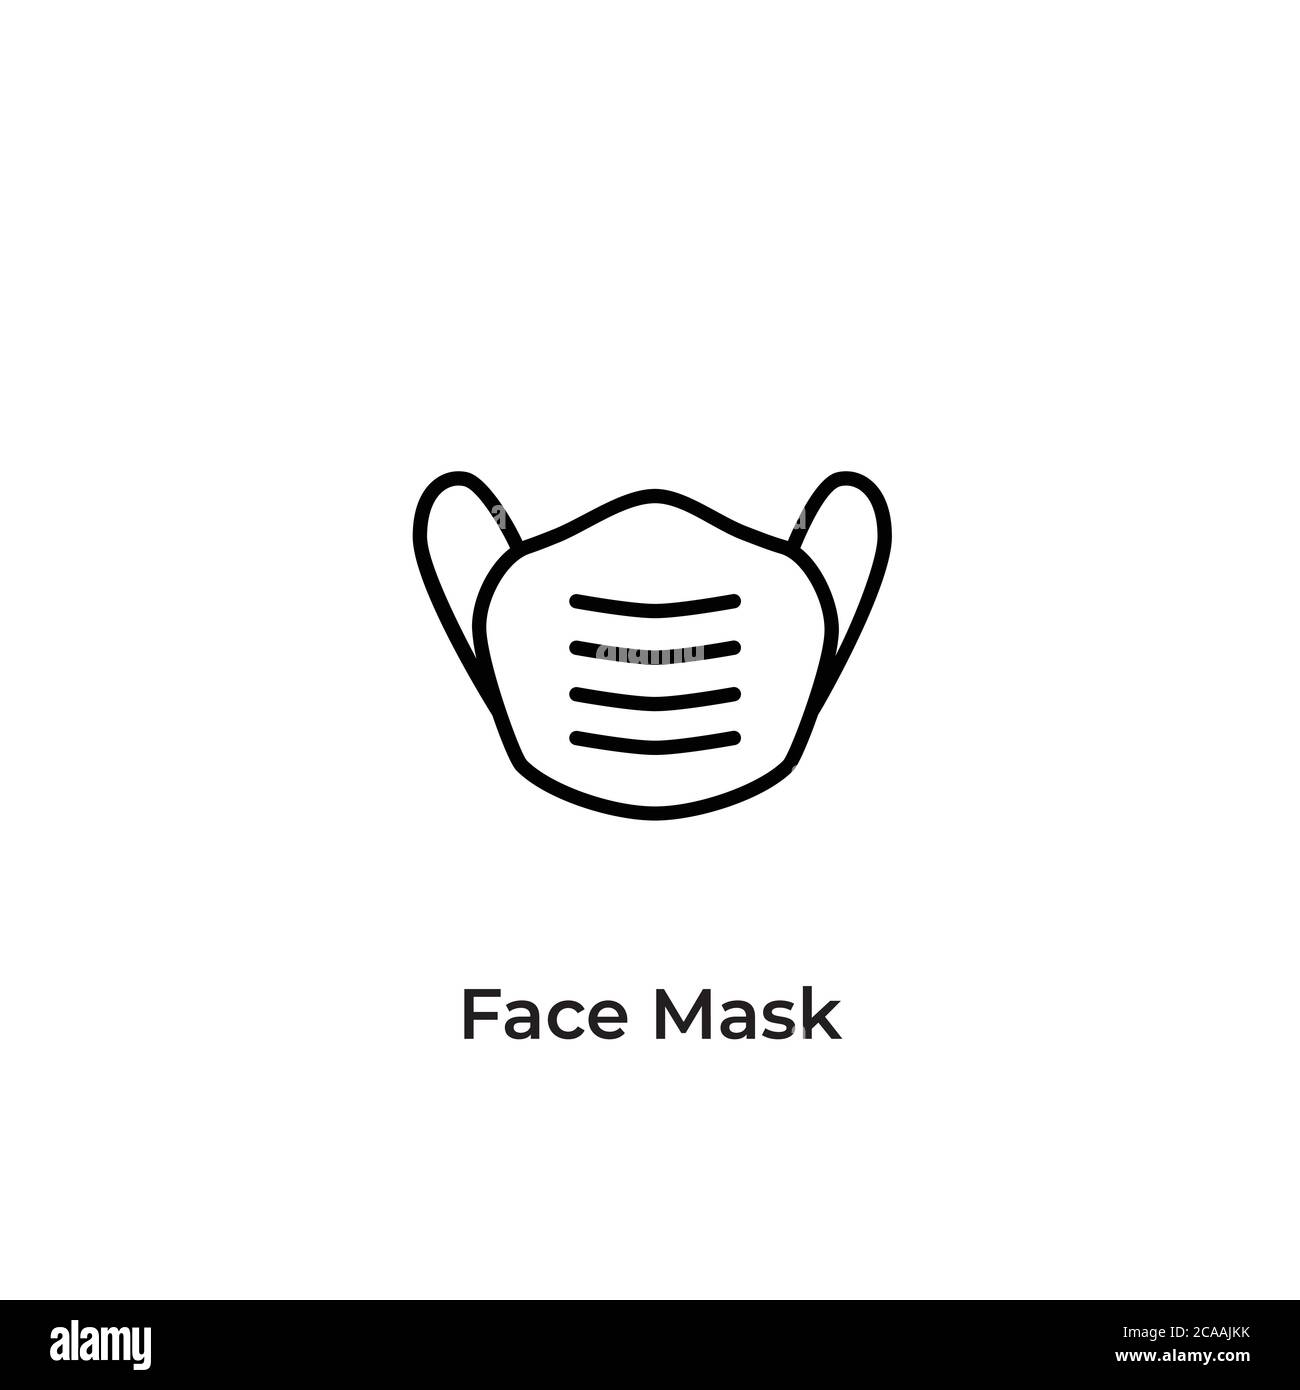 Icona maschera facciale. Maschera chirurgica o medica protettiva. Maschera facciale necessaria locale Firma, Avviso per la sicurezza, copertura del viso. Indossare una maschera facciale Illustrazione Vettoriale